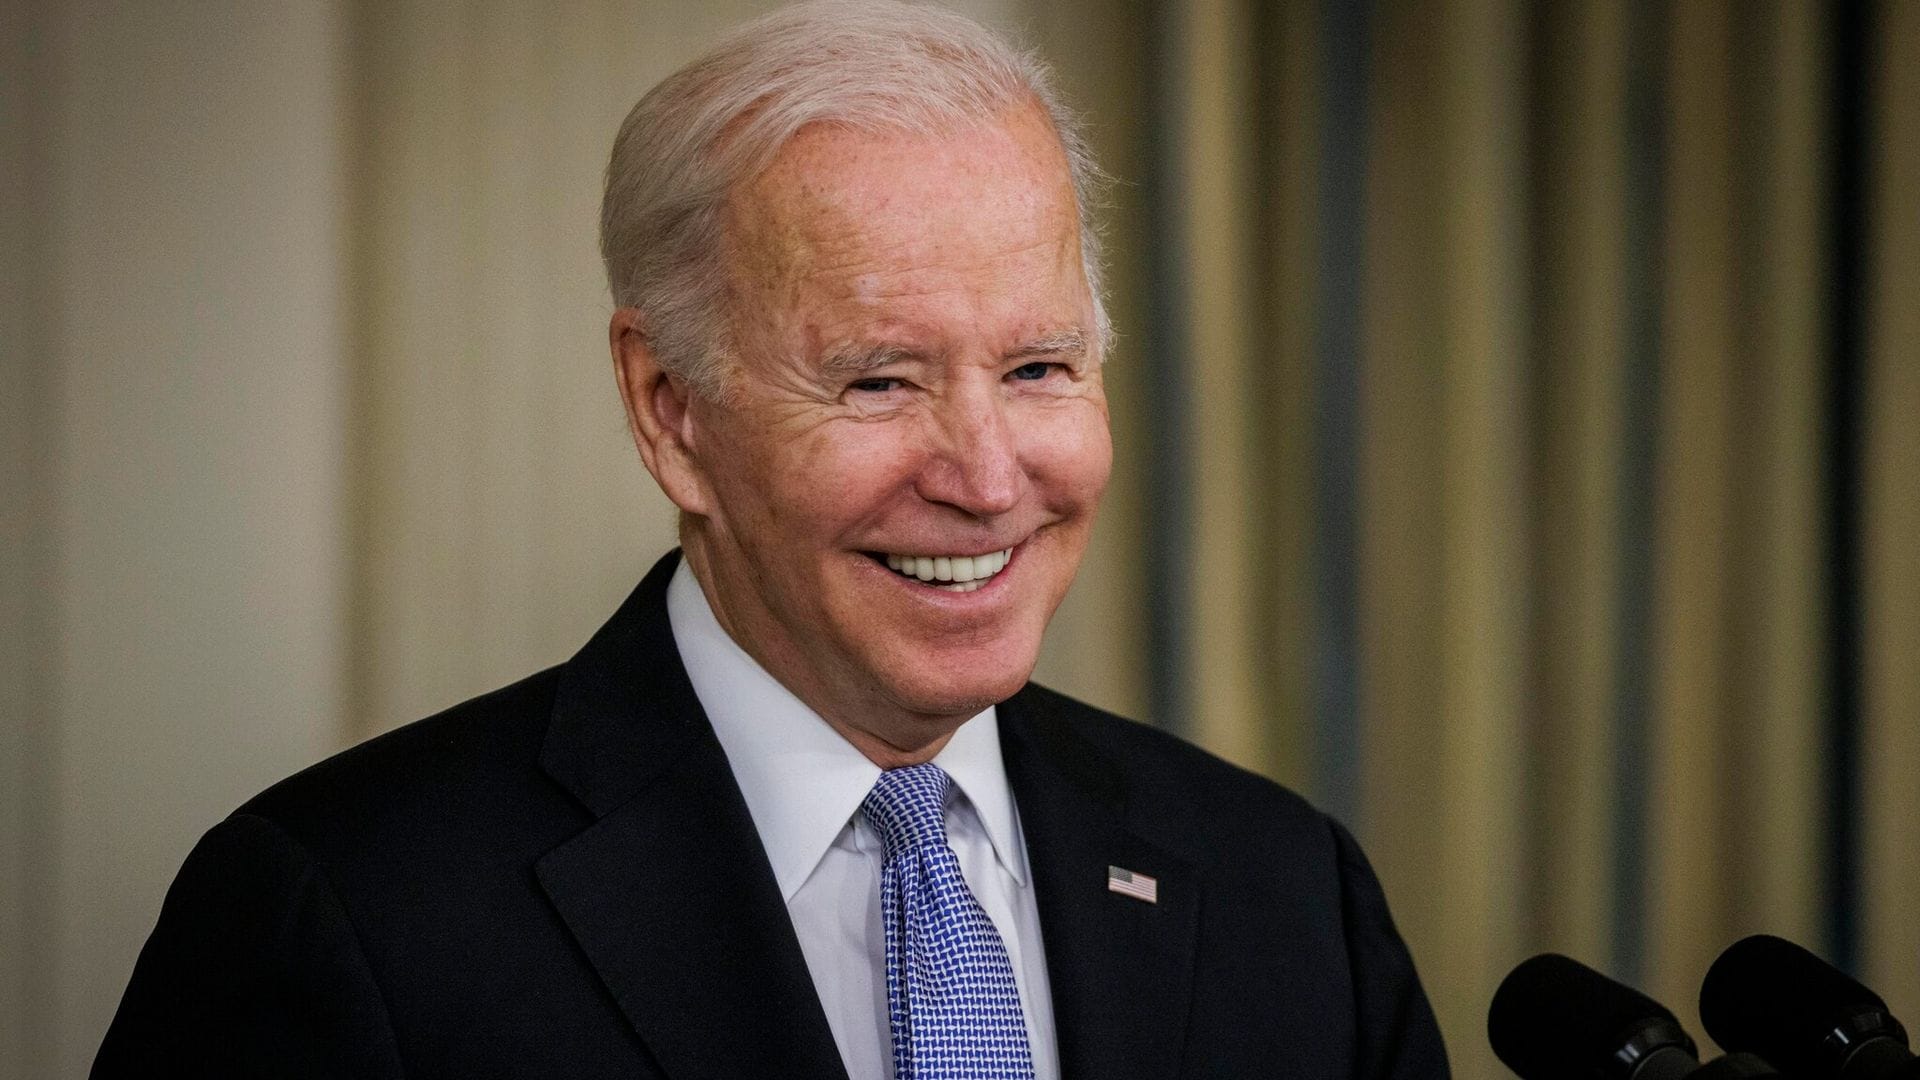 El presidente Joe Biden vuelve a dar positivo a COVID-19